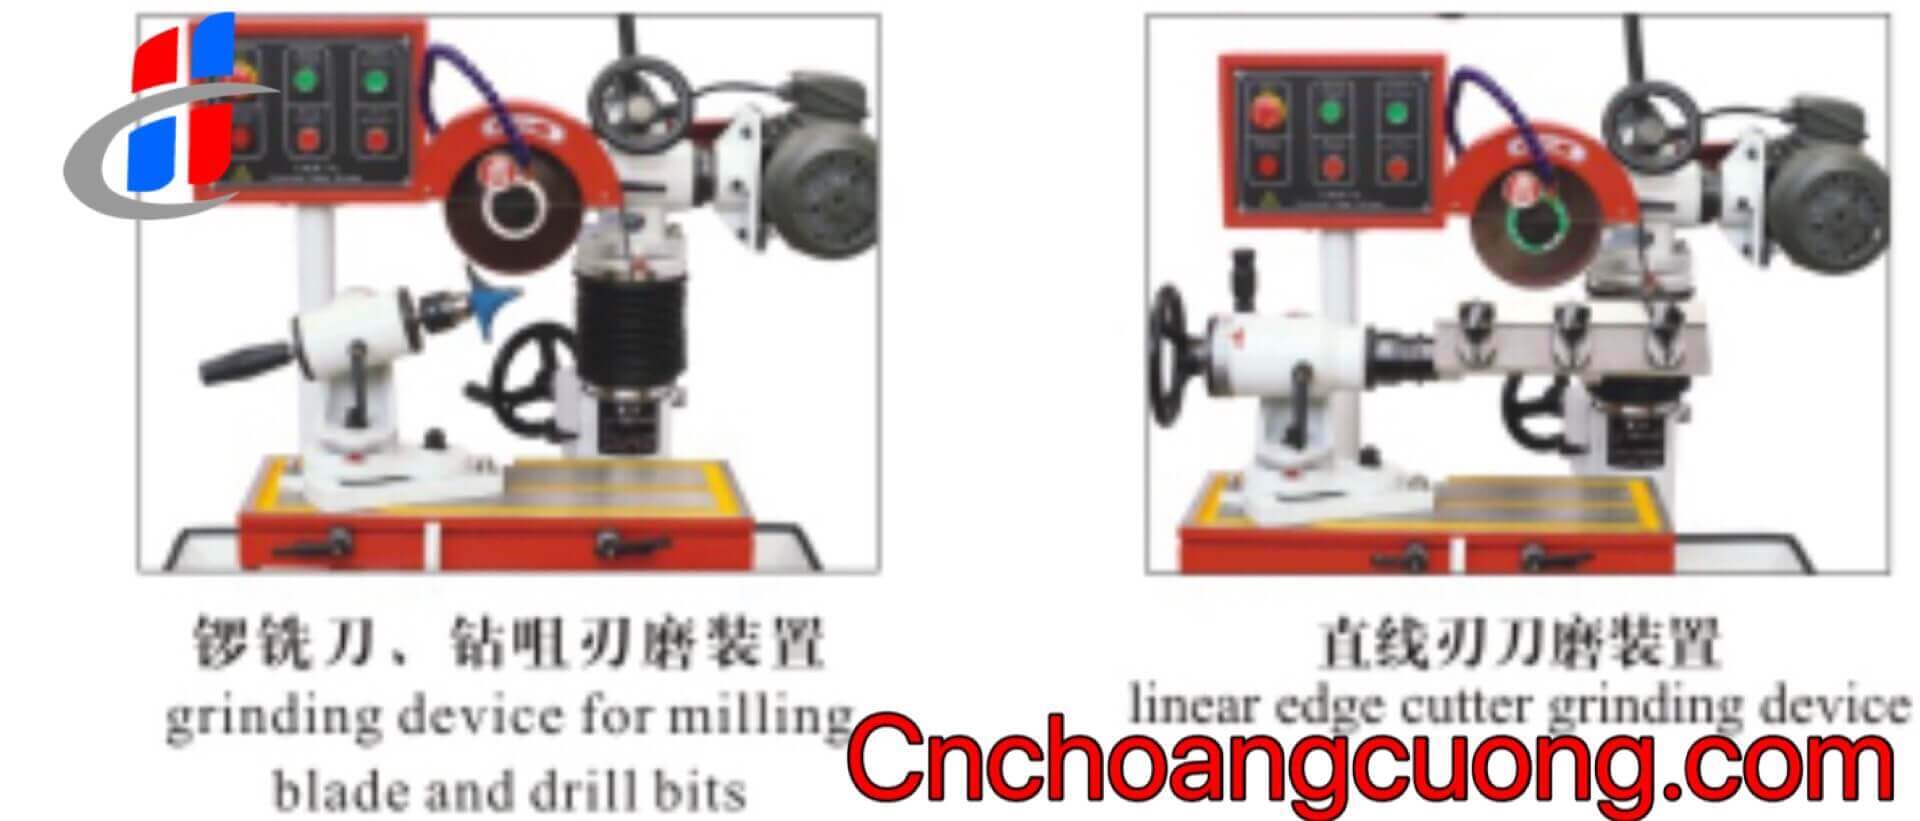 https://cnchoangcuong.com/product/may-mai-luoi-cua-da-nang-mf2718c-iii/